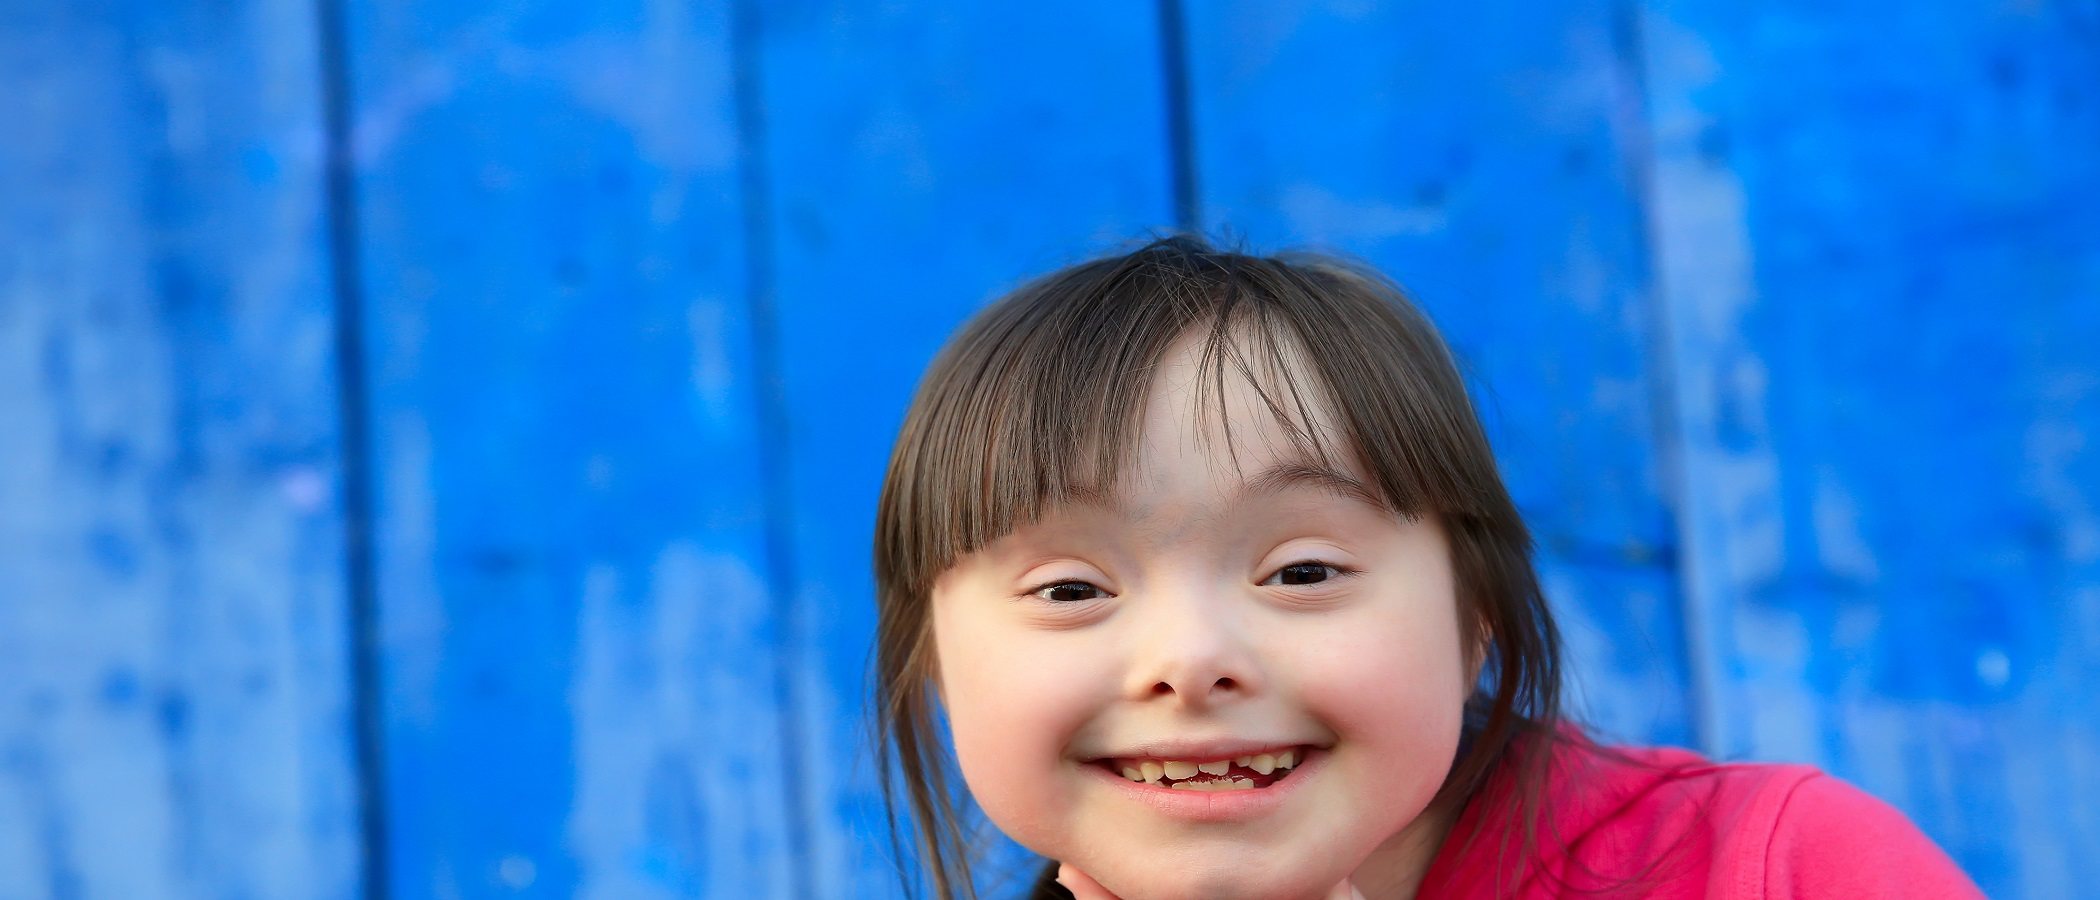 Los efectos del refuerzo positivo en niños con discapacidad